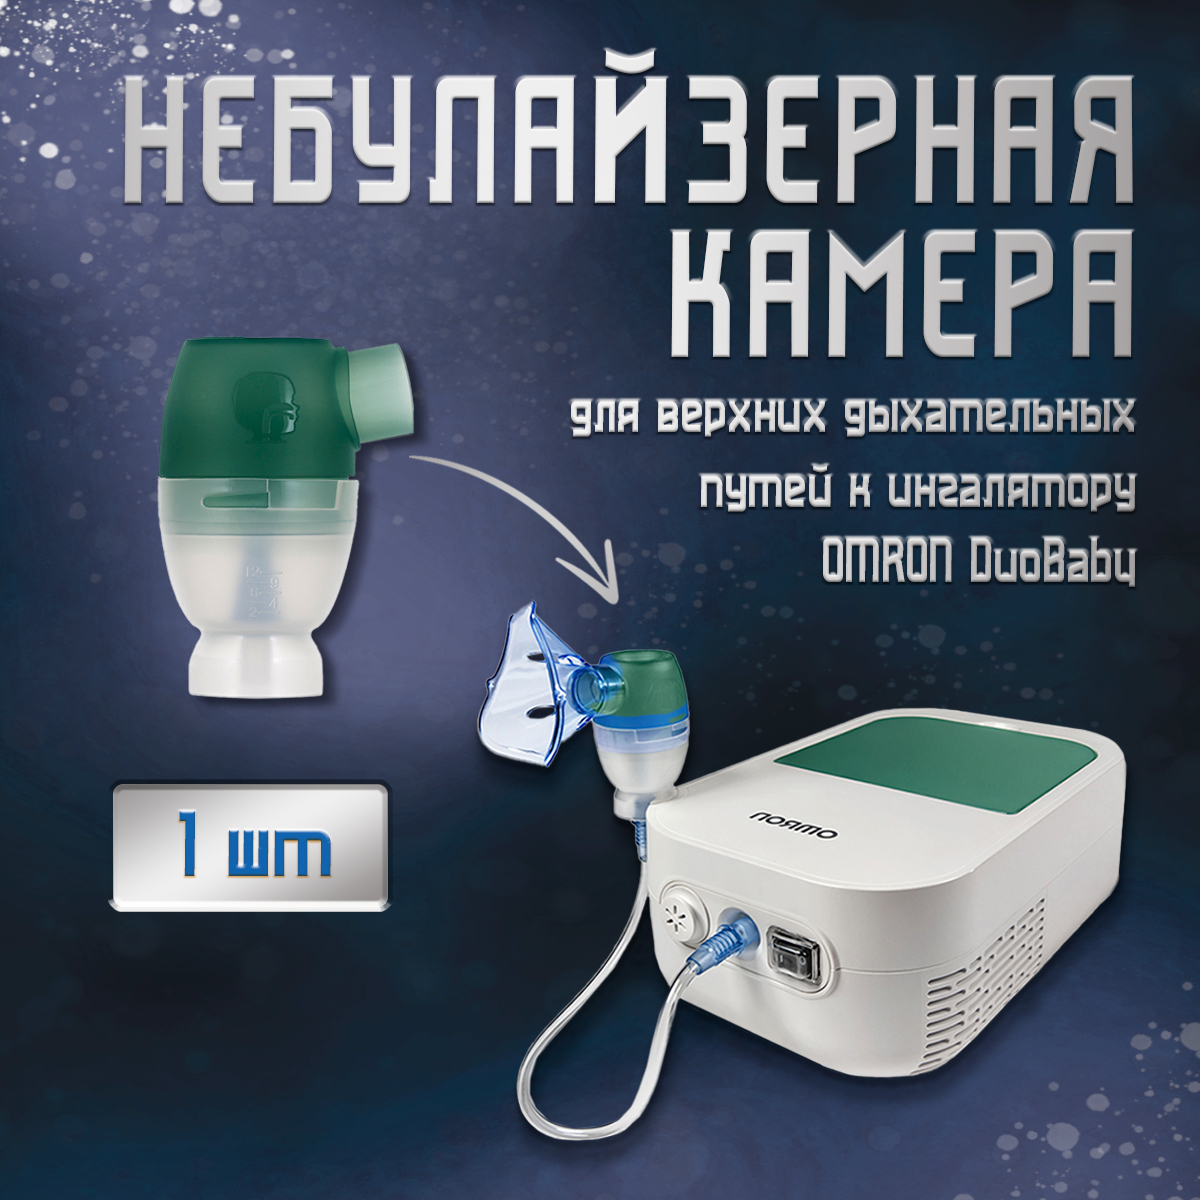 Небулайзерная камера для верхних дыхательных путей OMRON DuoBaby NE-С301-RU